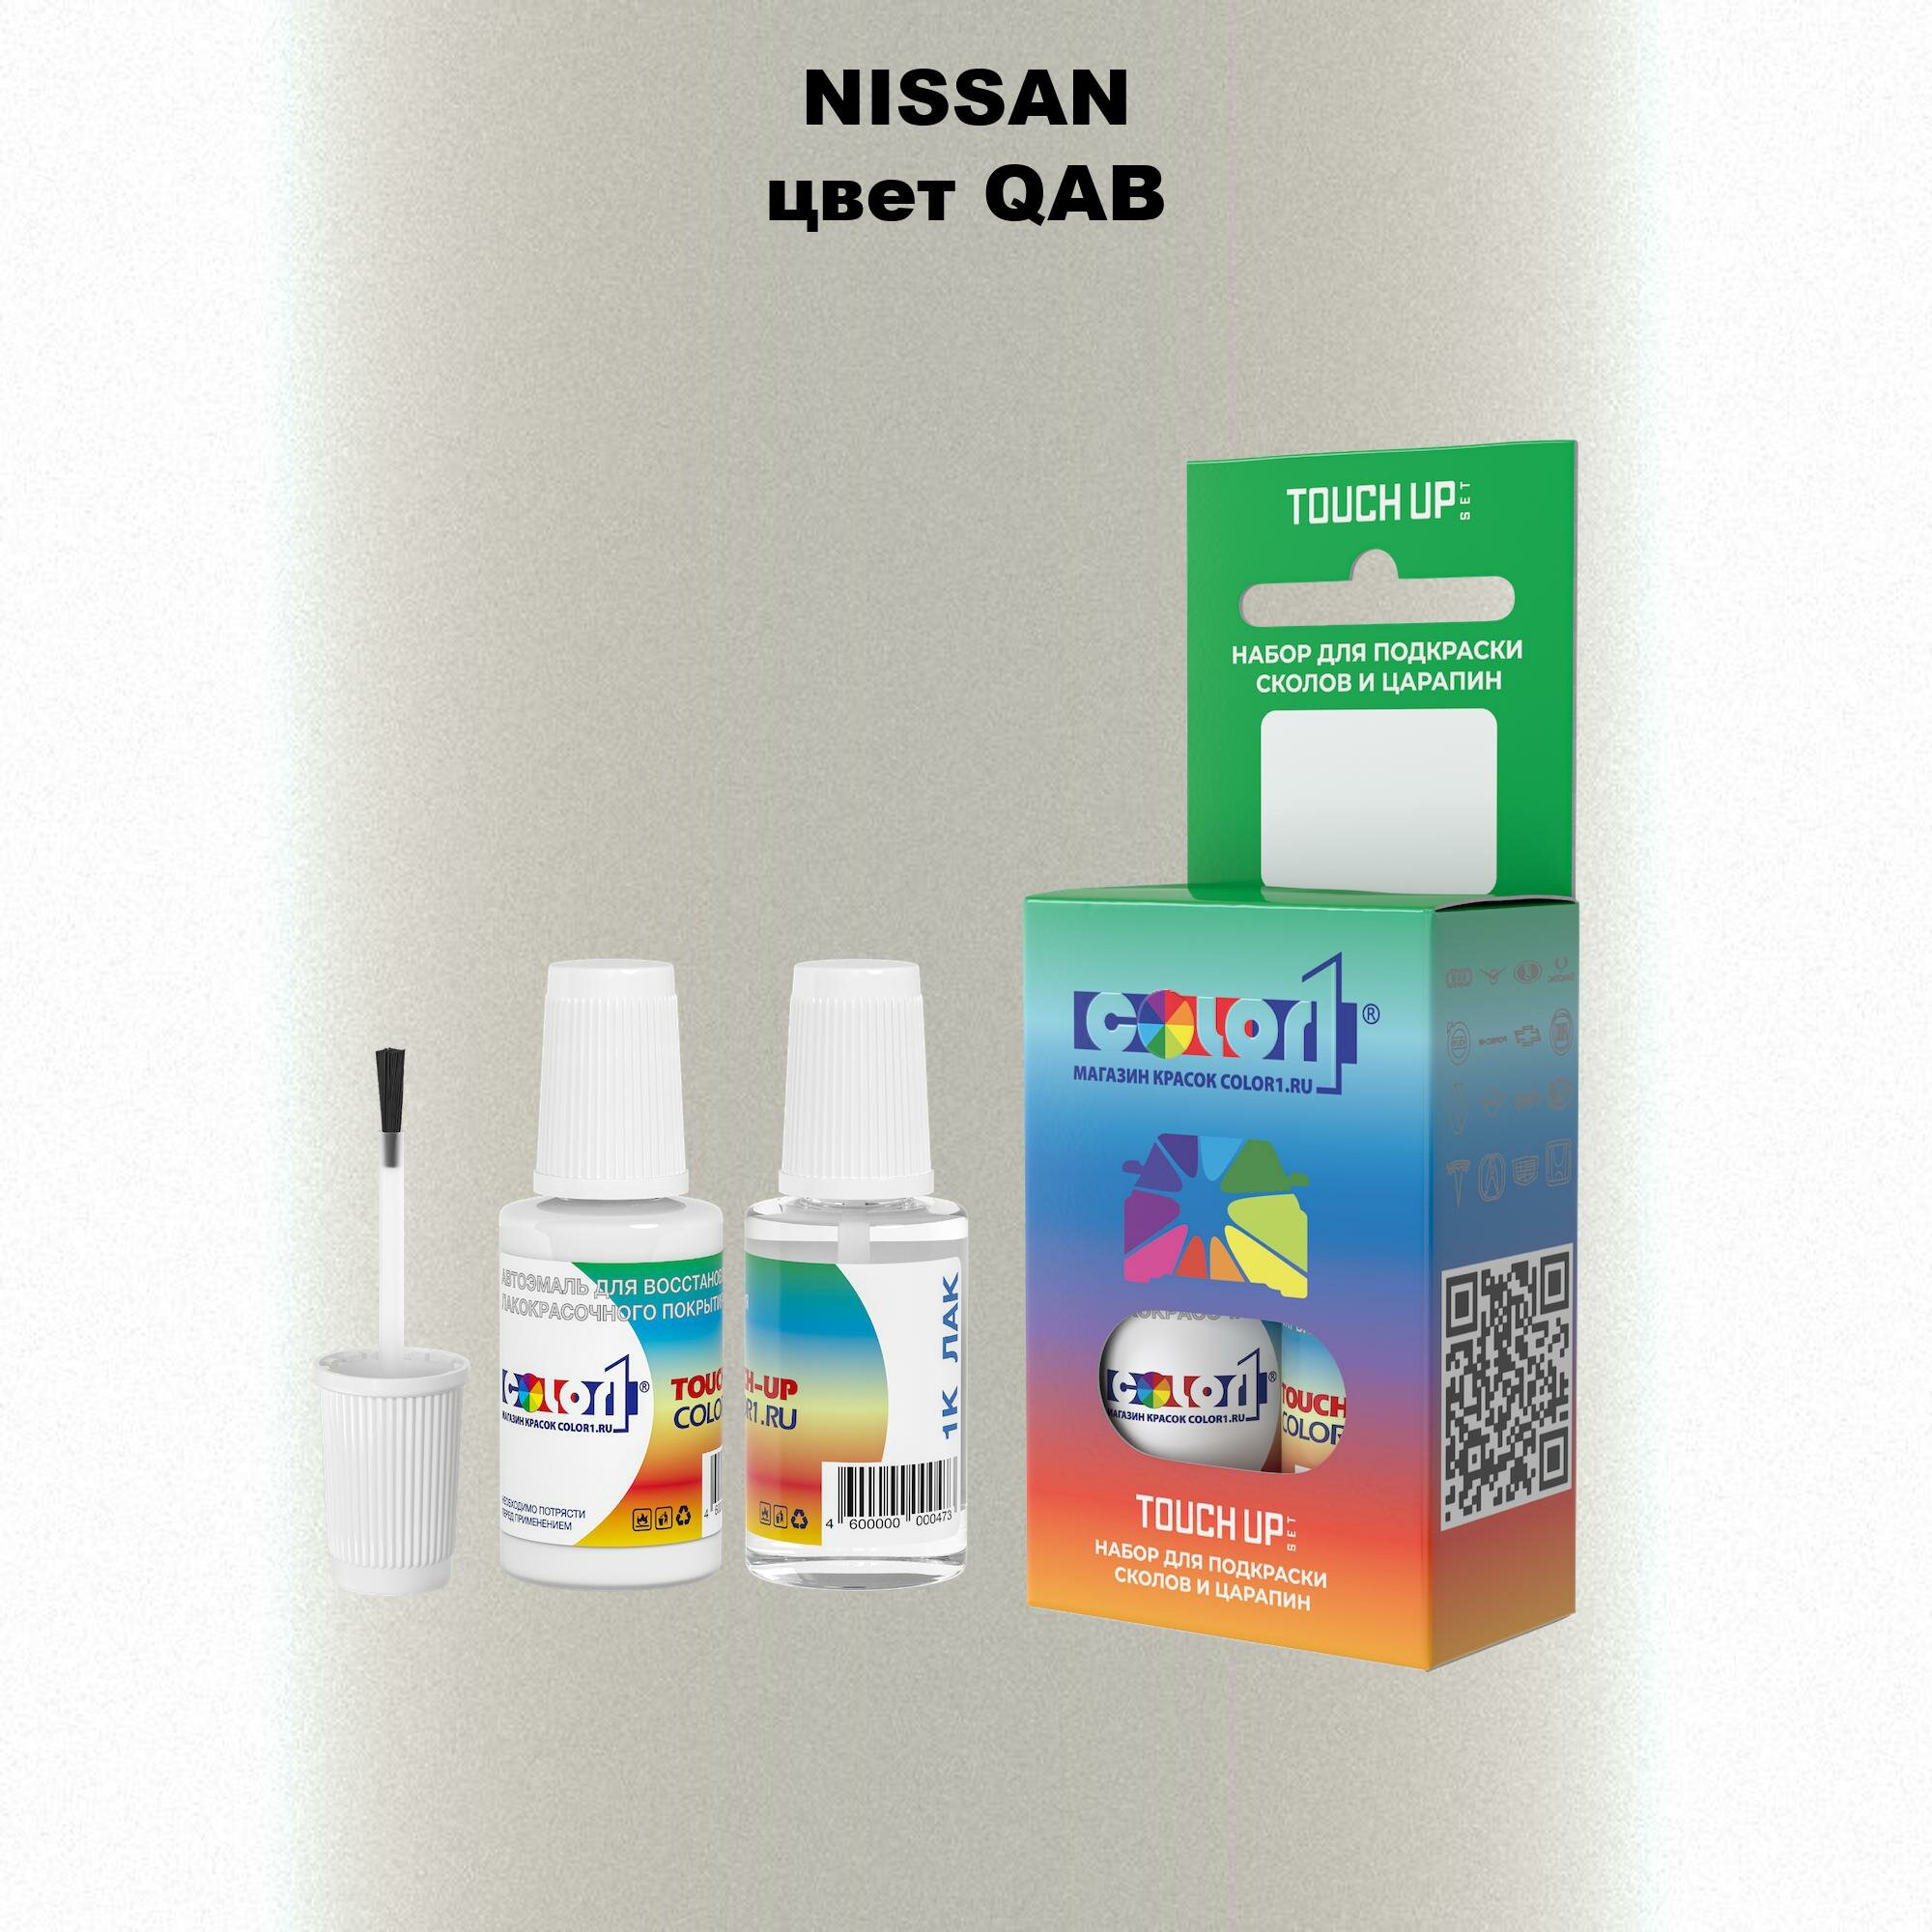 Набор из 2-х флаконов для закраски сколов (краска 20мл + лак 20мл) на автомобиле NISSAN, цвет QAB - PEARL WHITE, IVORY PEARL, MAJESTIC WHITE, STORM WHITE